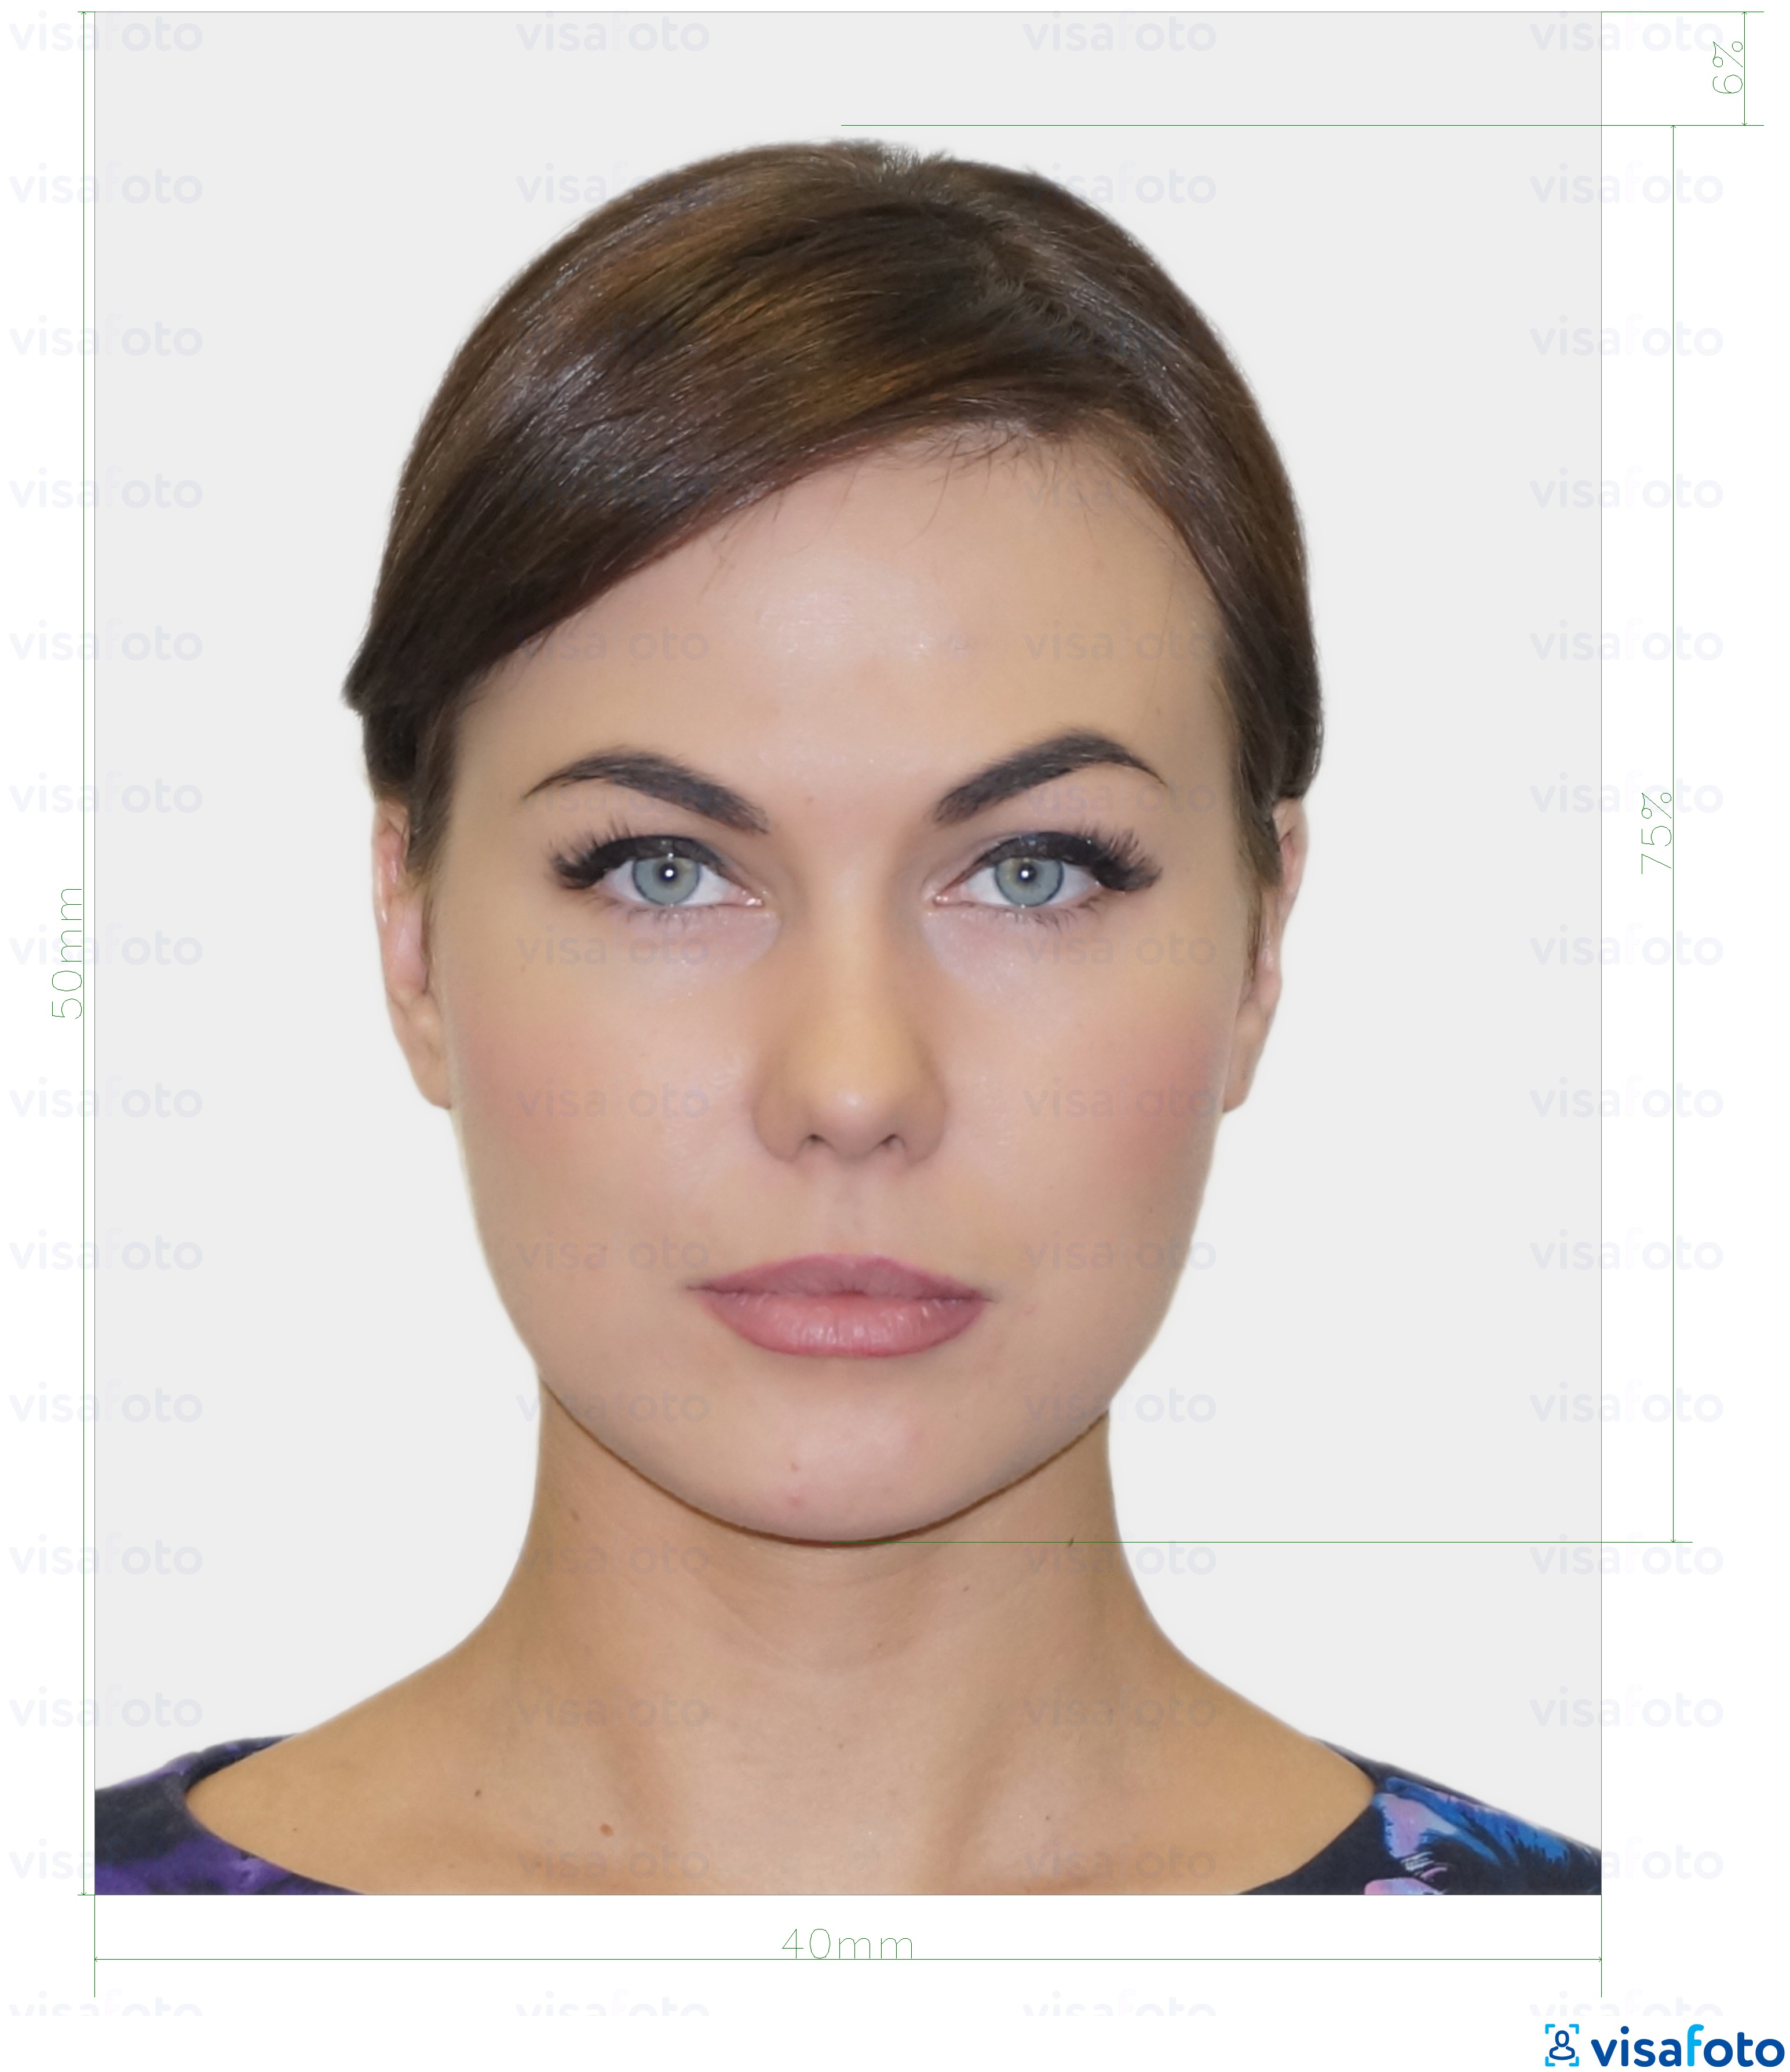 Ejemplo de foto para Tarjeta de identificación de Estonia (ID-kaart) 40x50 mm (4x5 cm) con la especificación del tamaño exacto